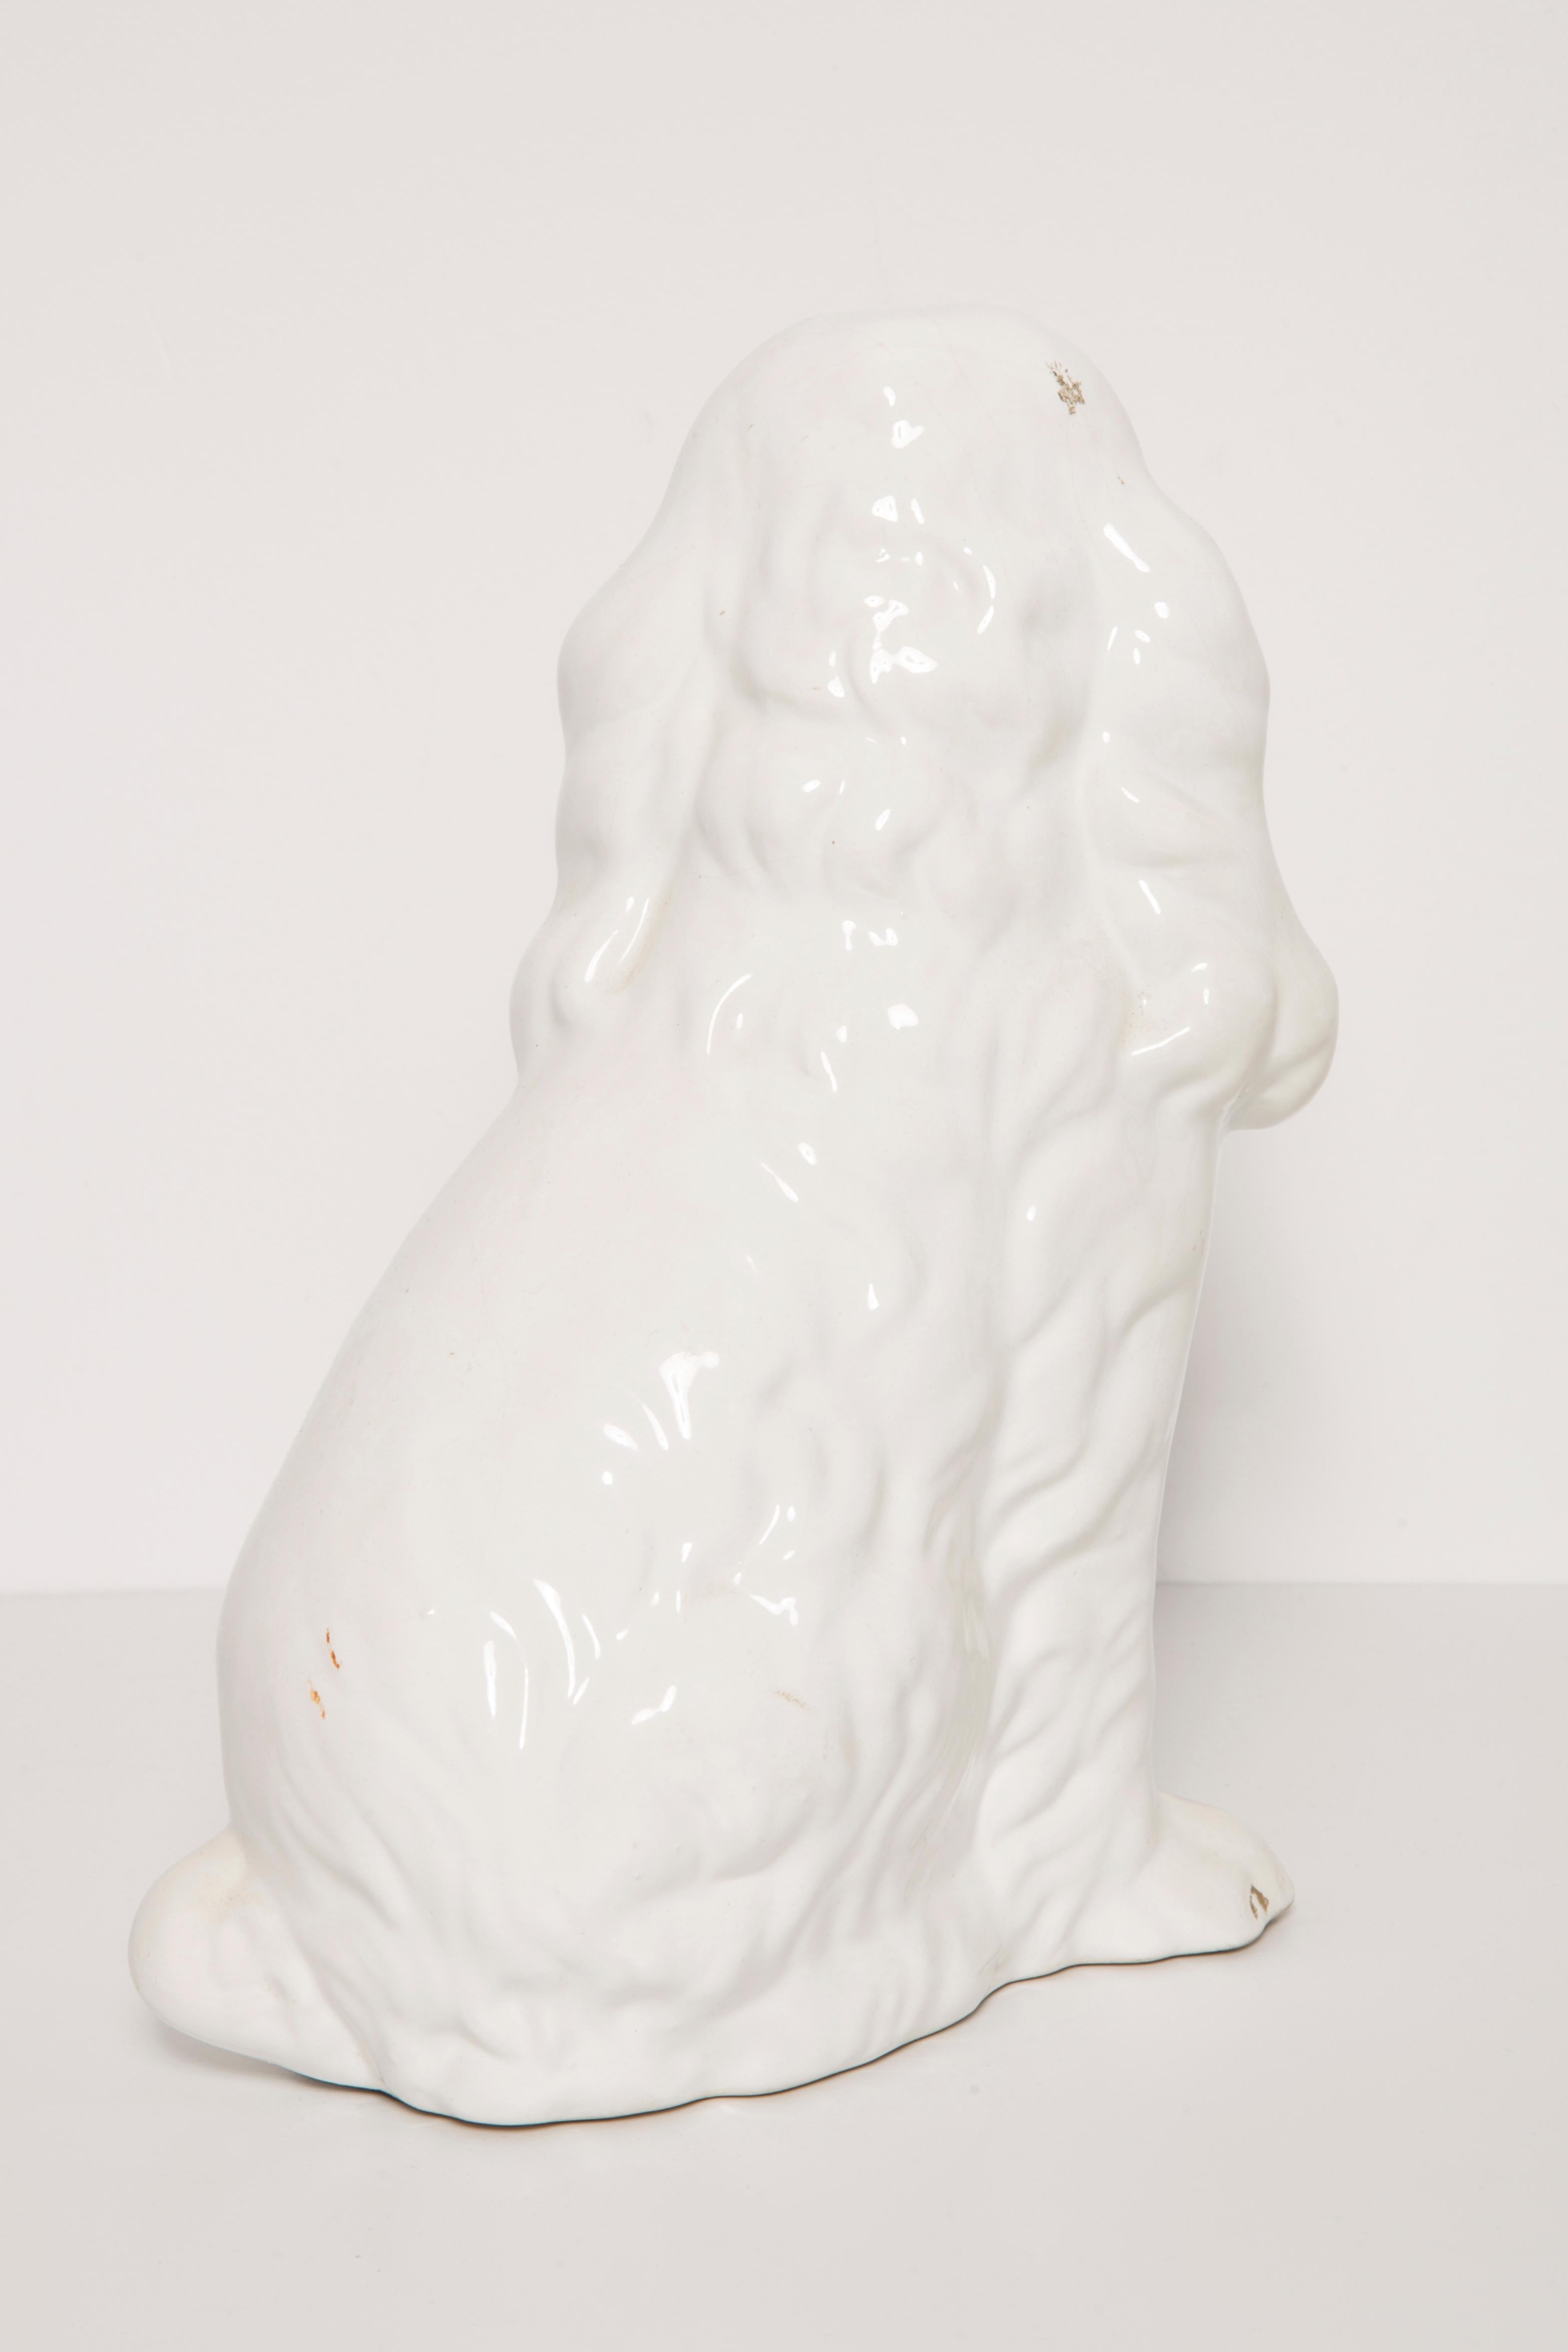 20th Century Rare Ceramic White Small Spaniel Dog Decorative Sculpture, Italy, 1960s For Sale